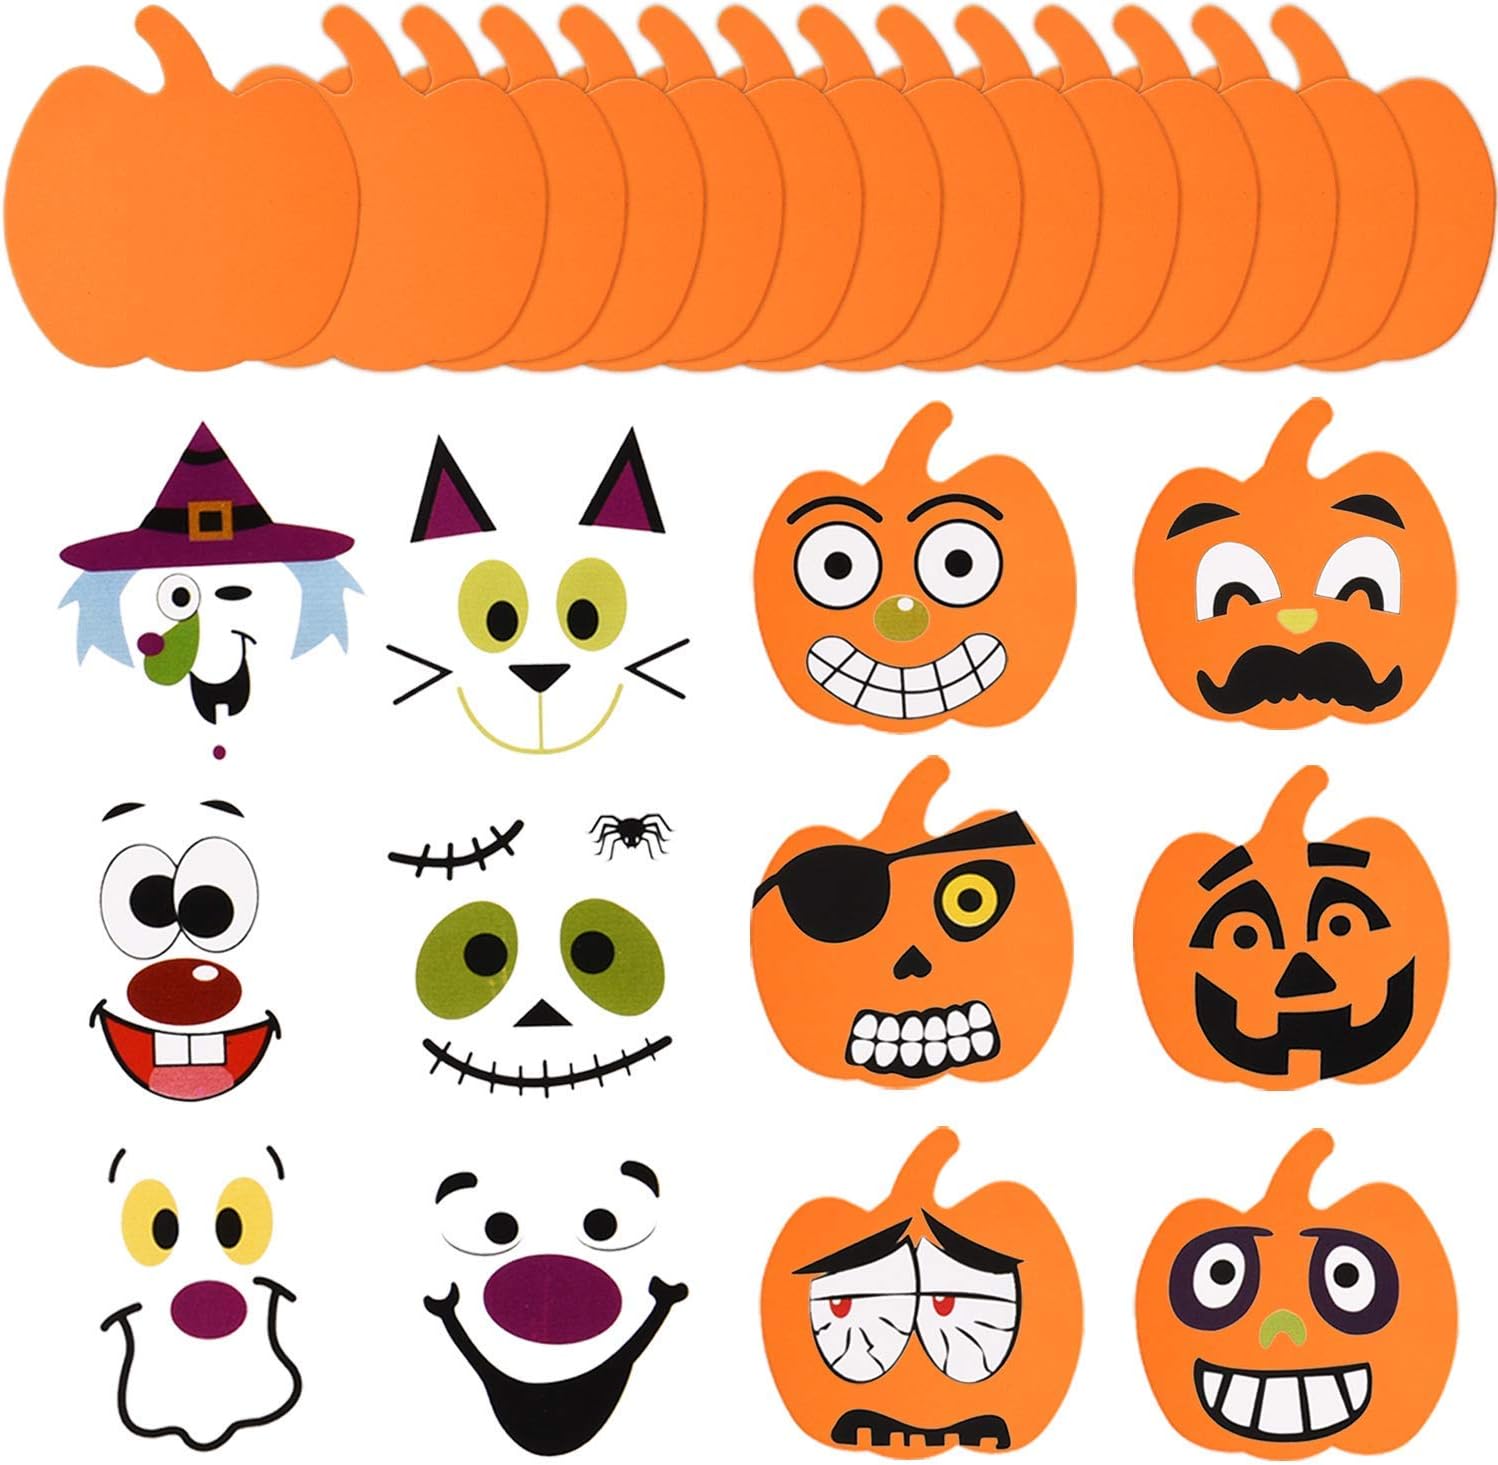 41 divertidos juegos y actividades de Halloween para todas las edades